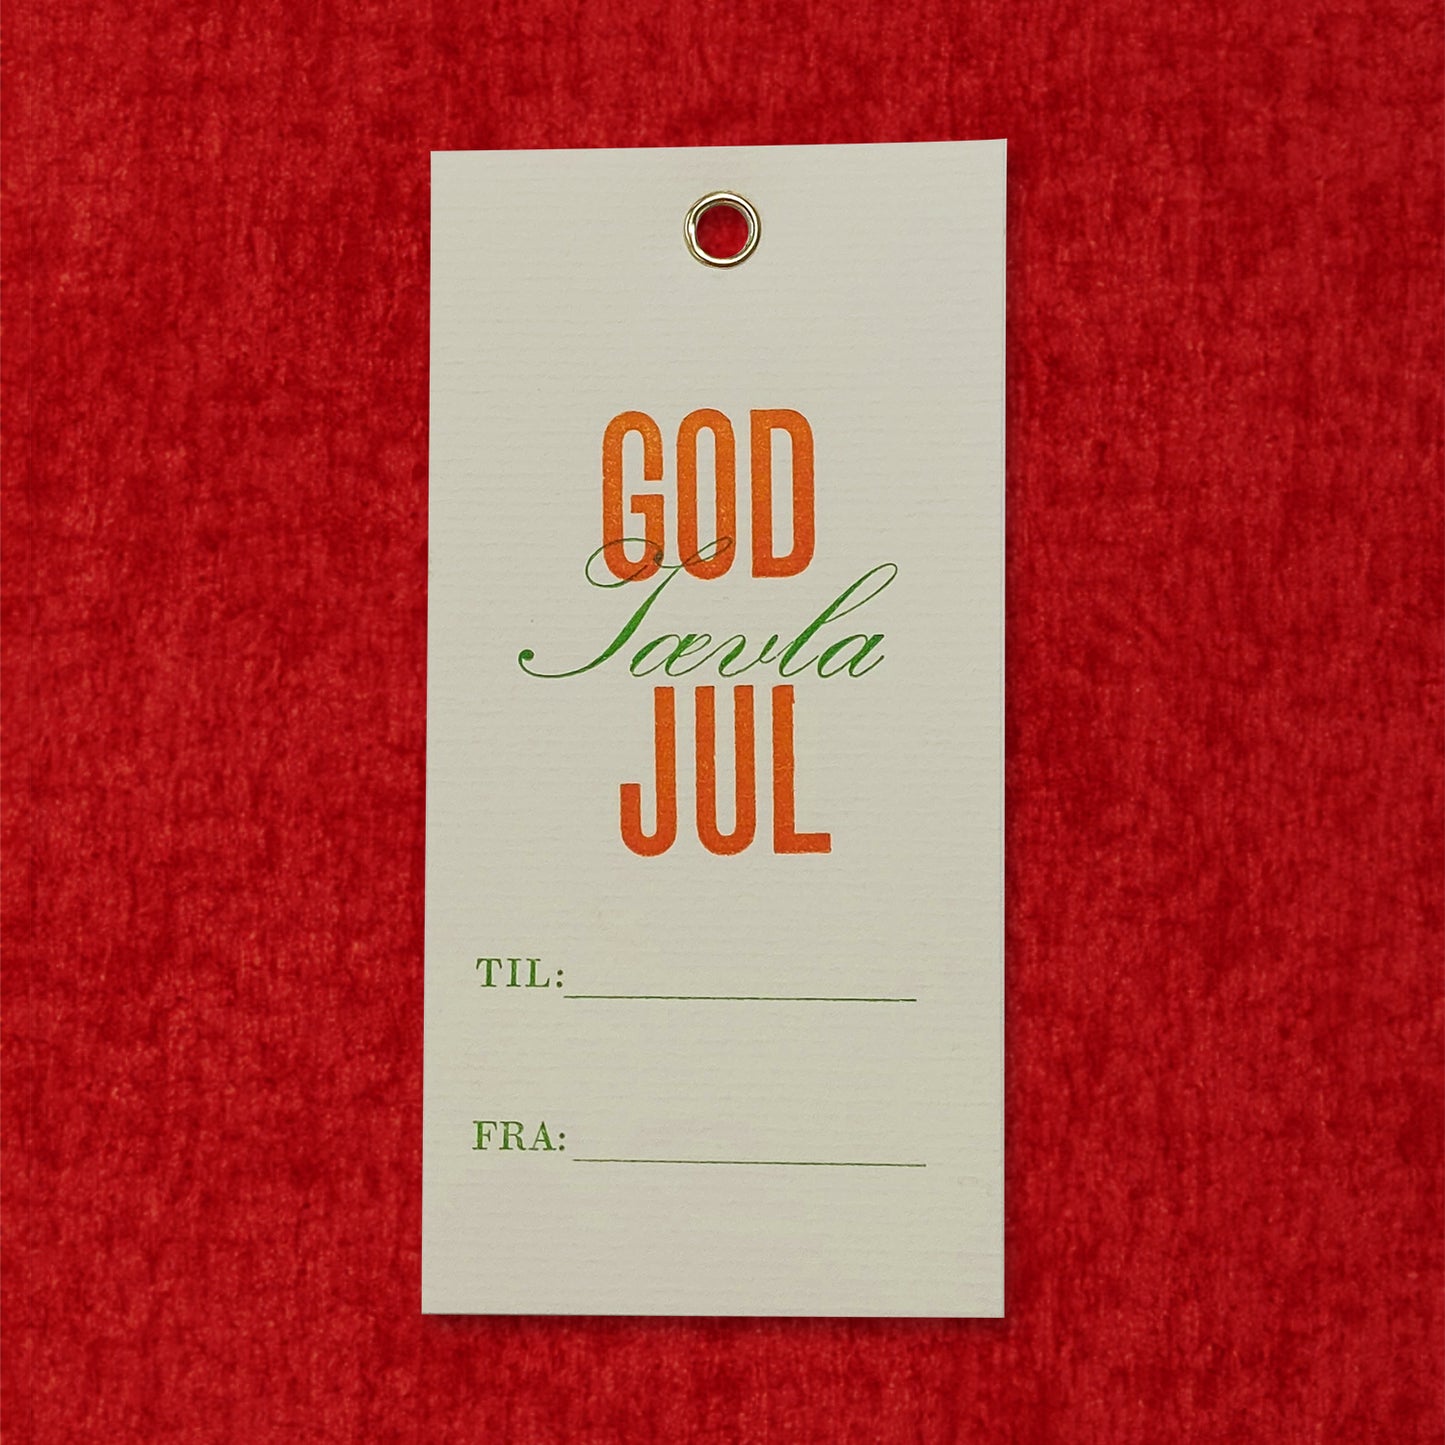 God j**la Jul